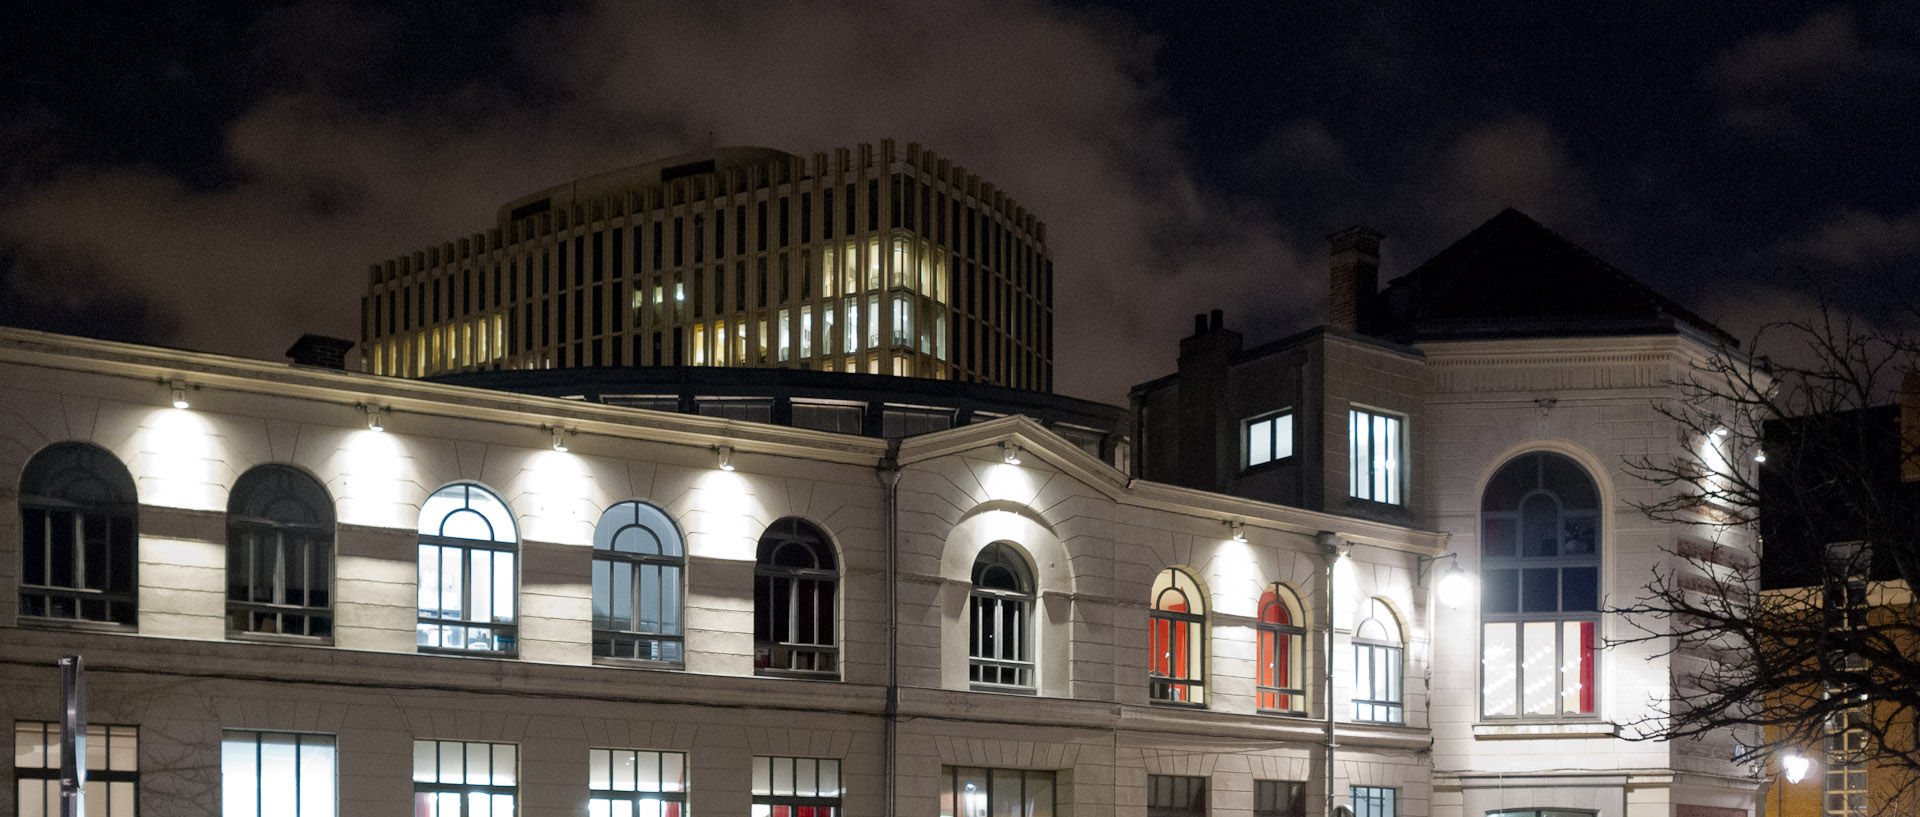 Le conservatoire de musique et le palais de justice, la nuit, à Lille.